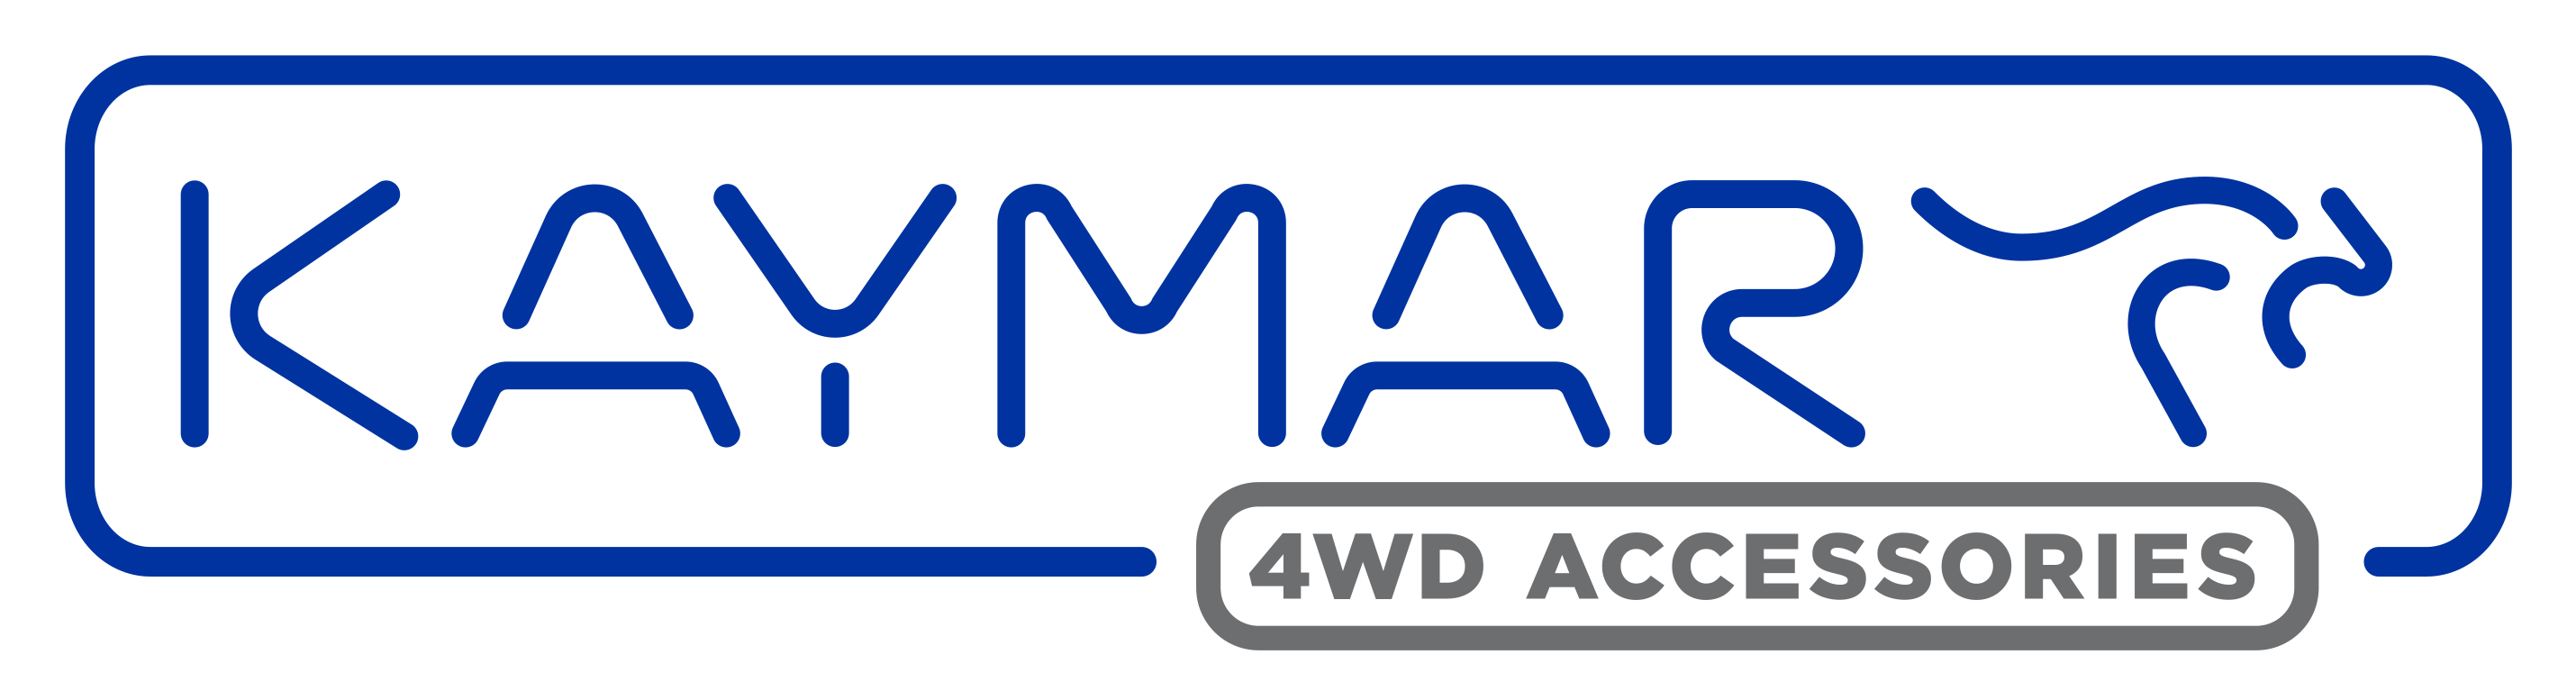 Kaymar Logo CMYK